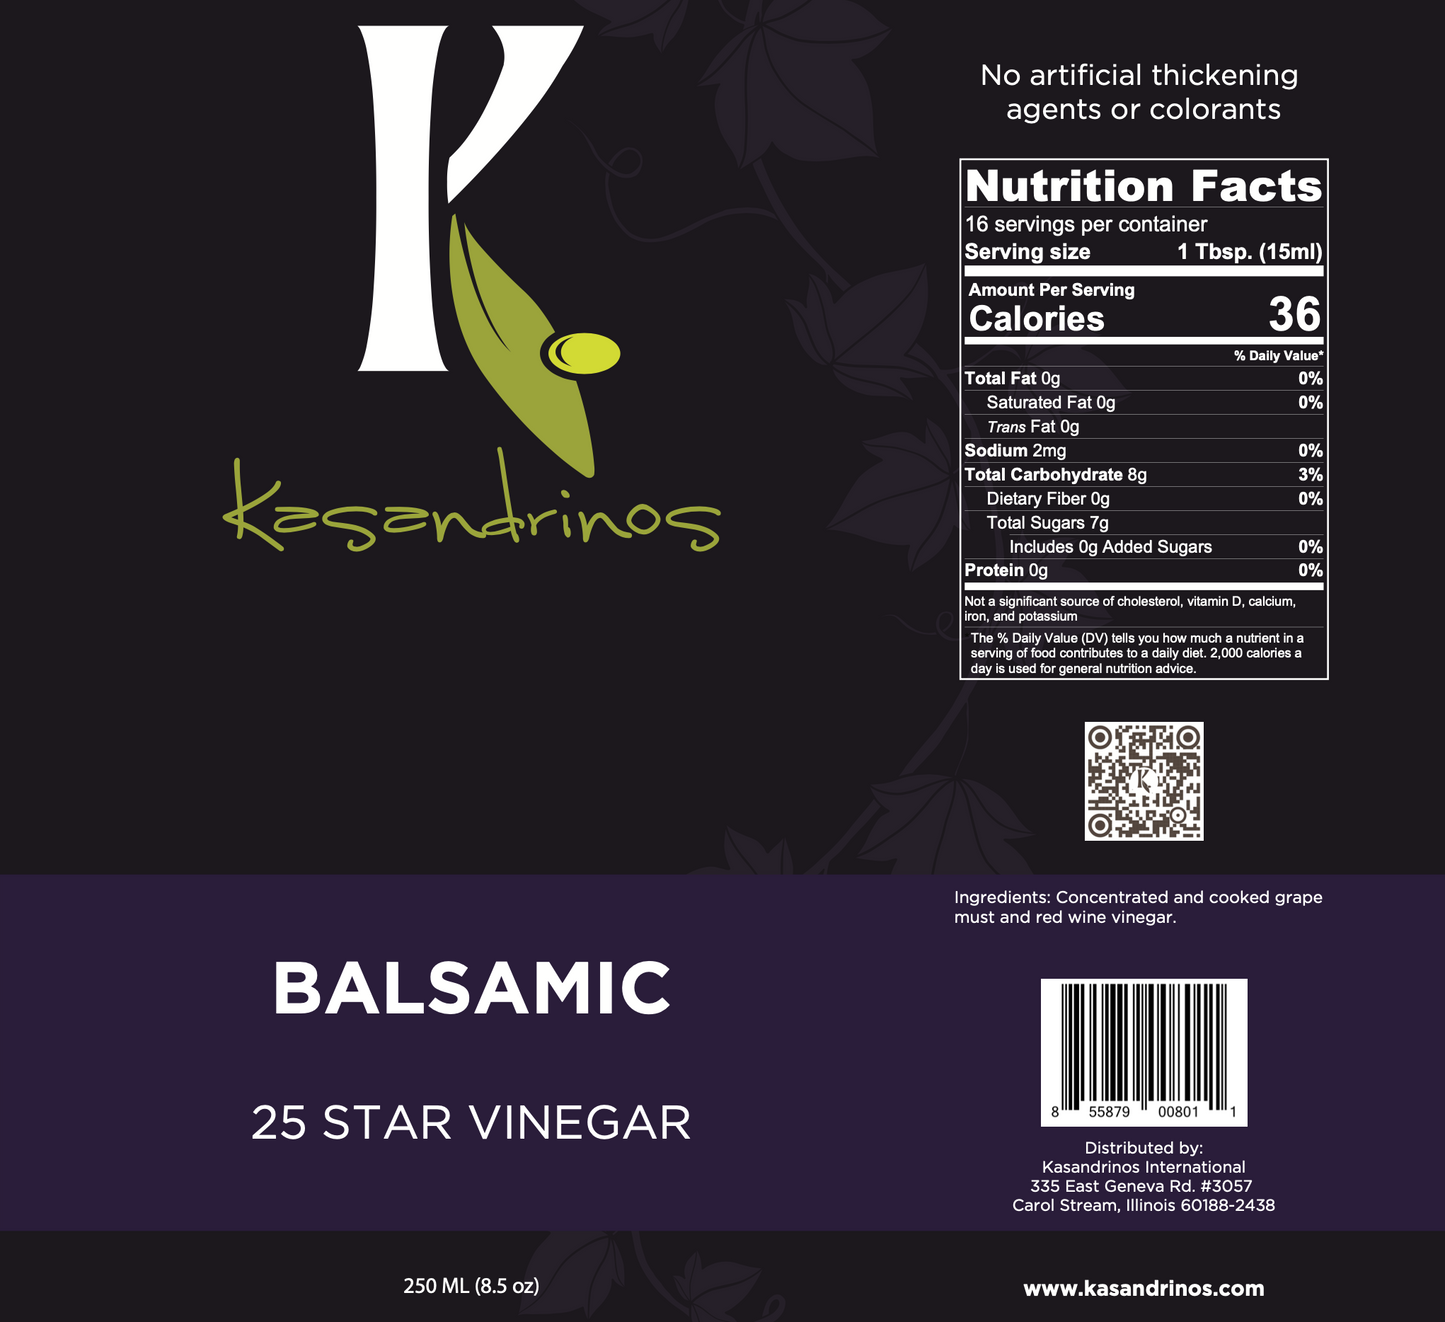 (1) 250ml Balsamic 25 Star Vinegar